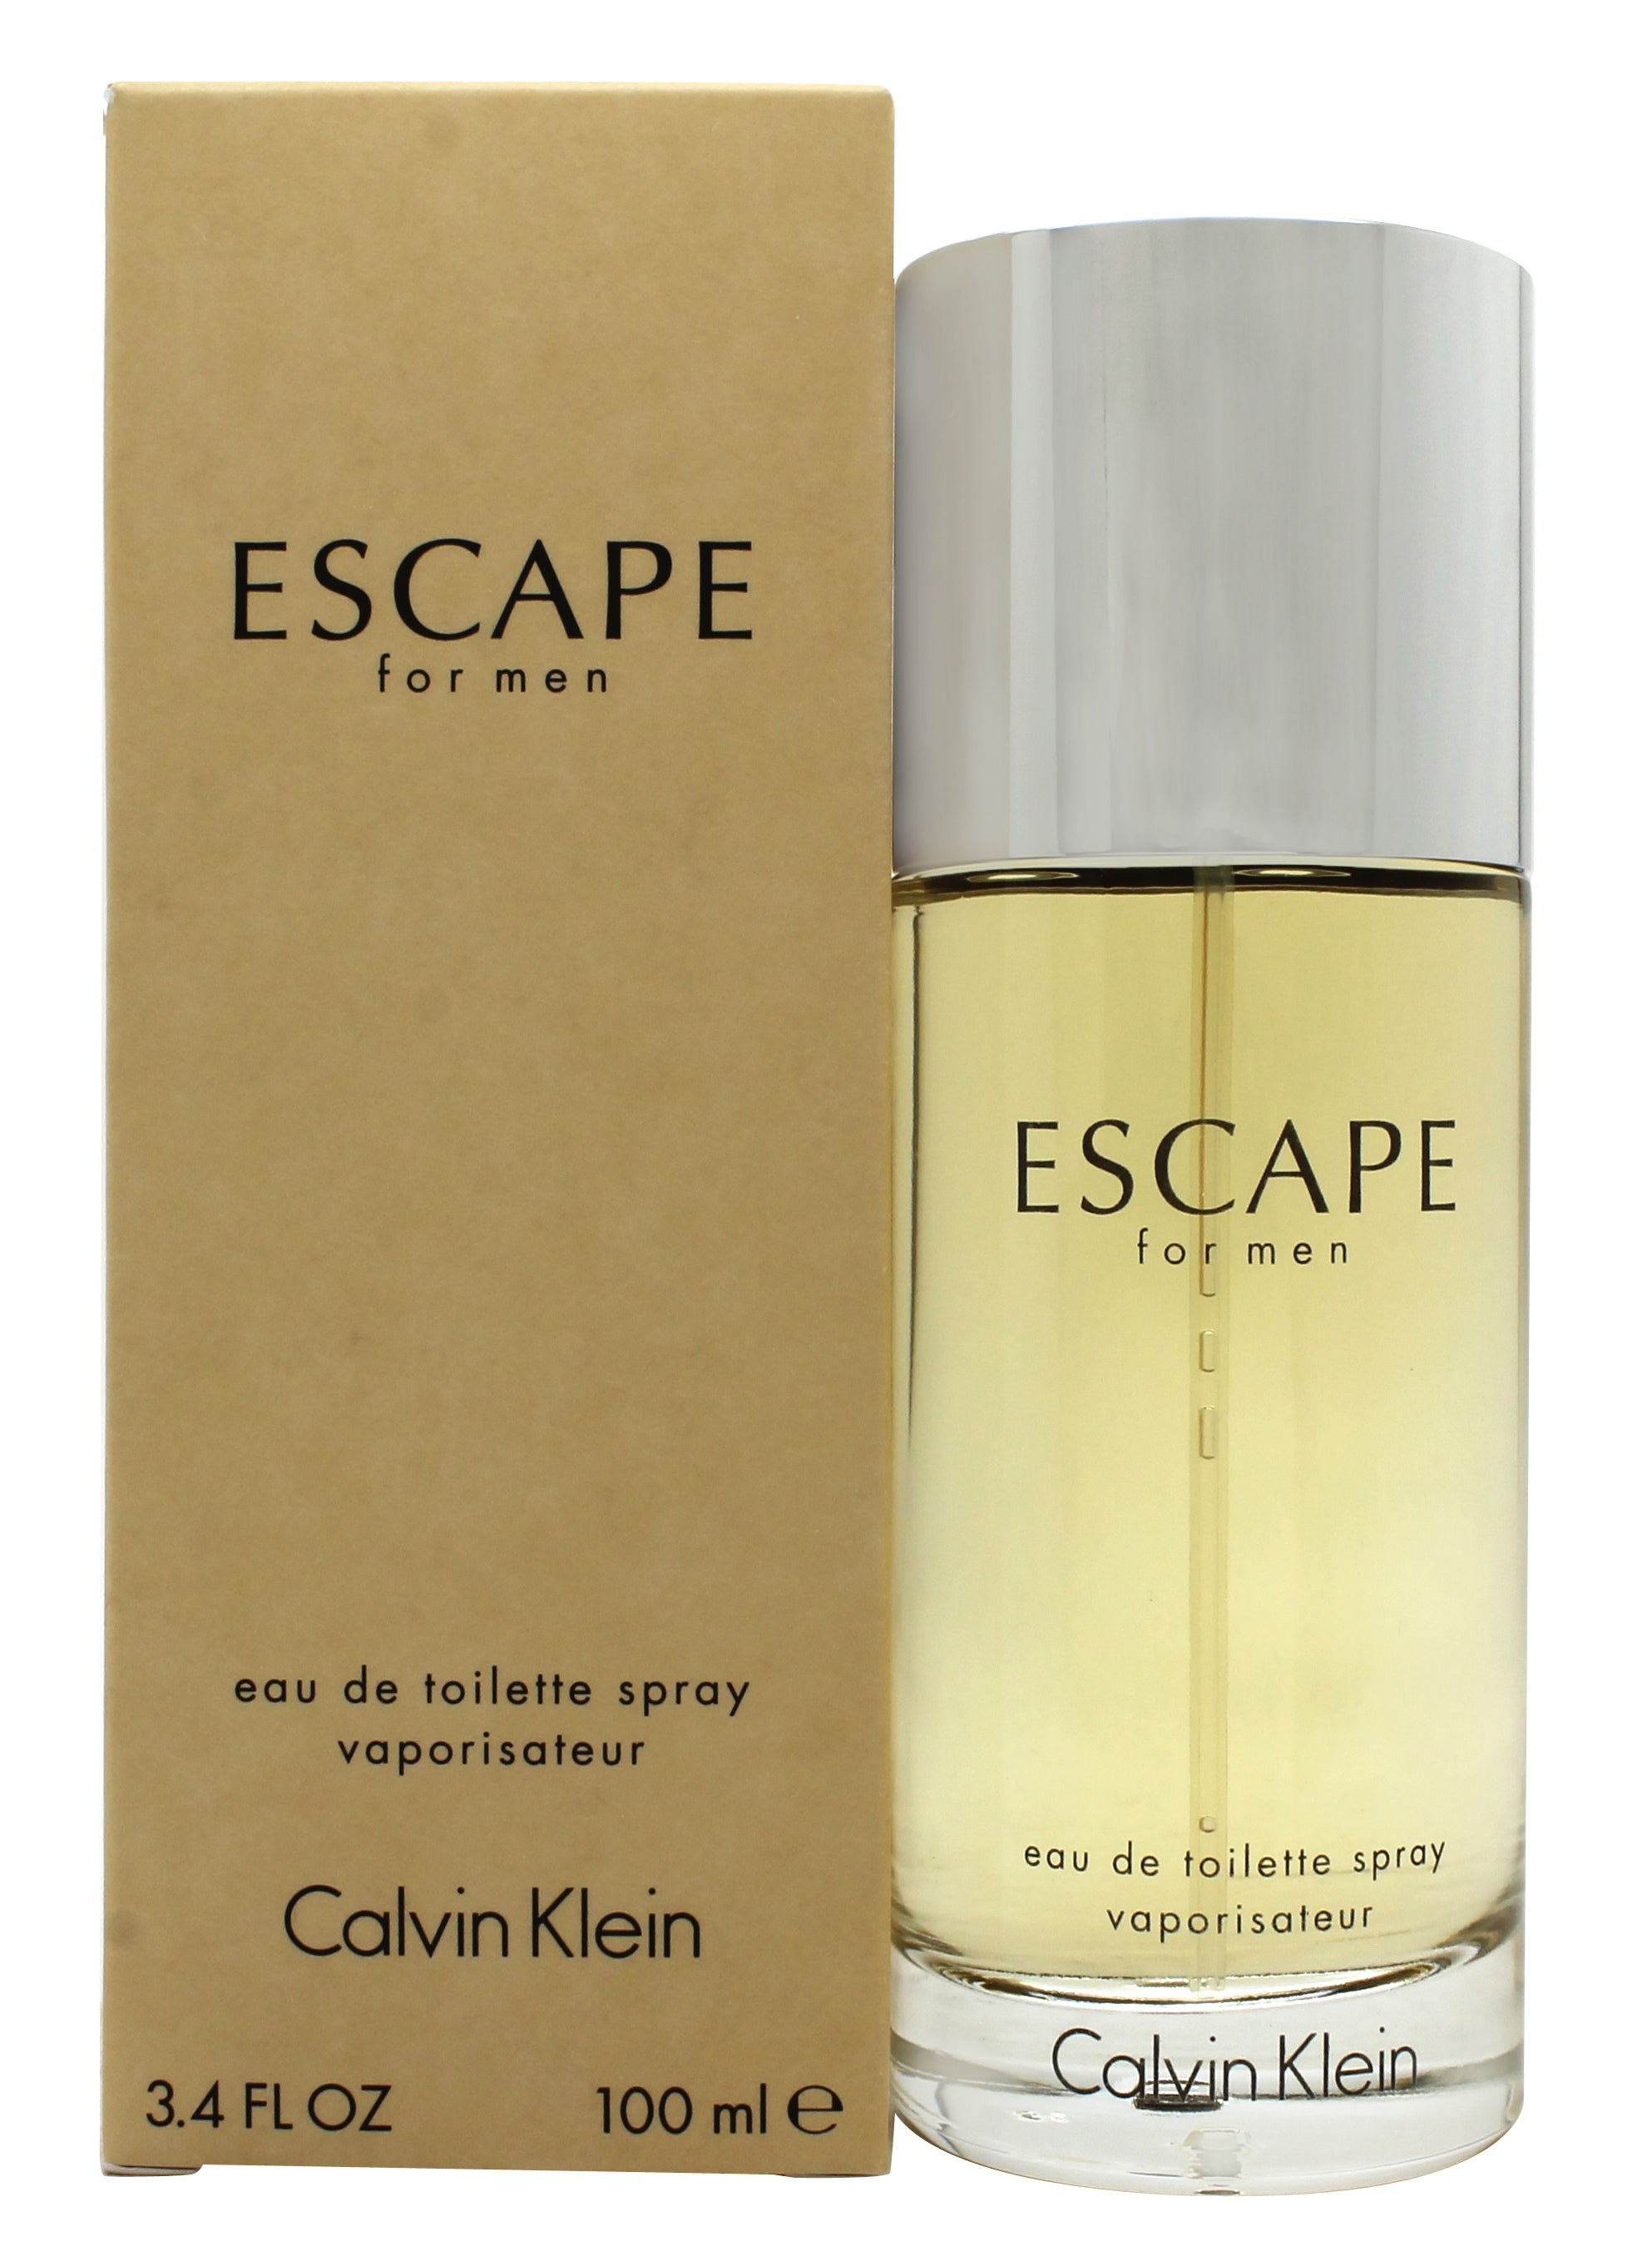 View Calvin Klein Escape Eau de Toilette 100ml Spray information